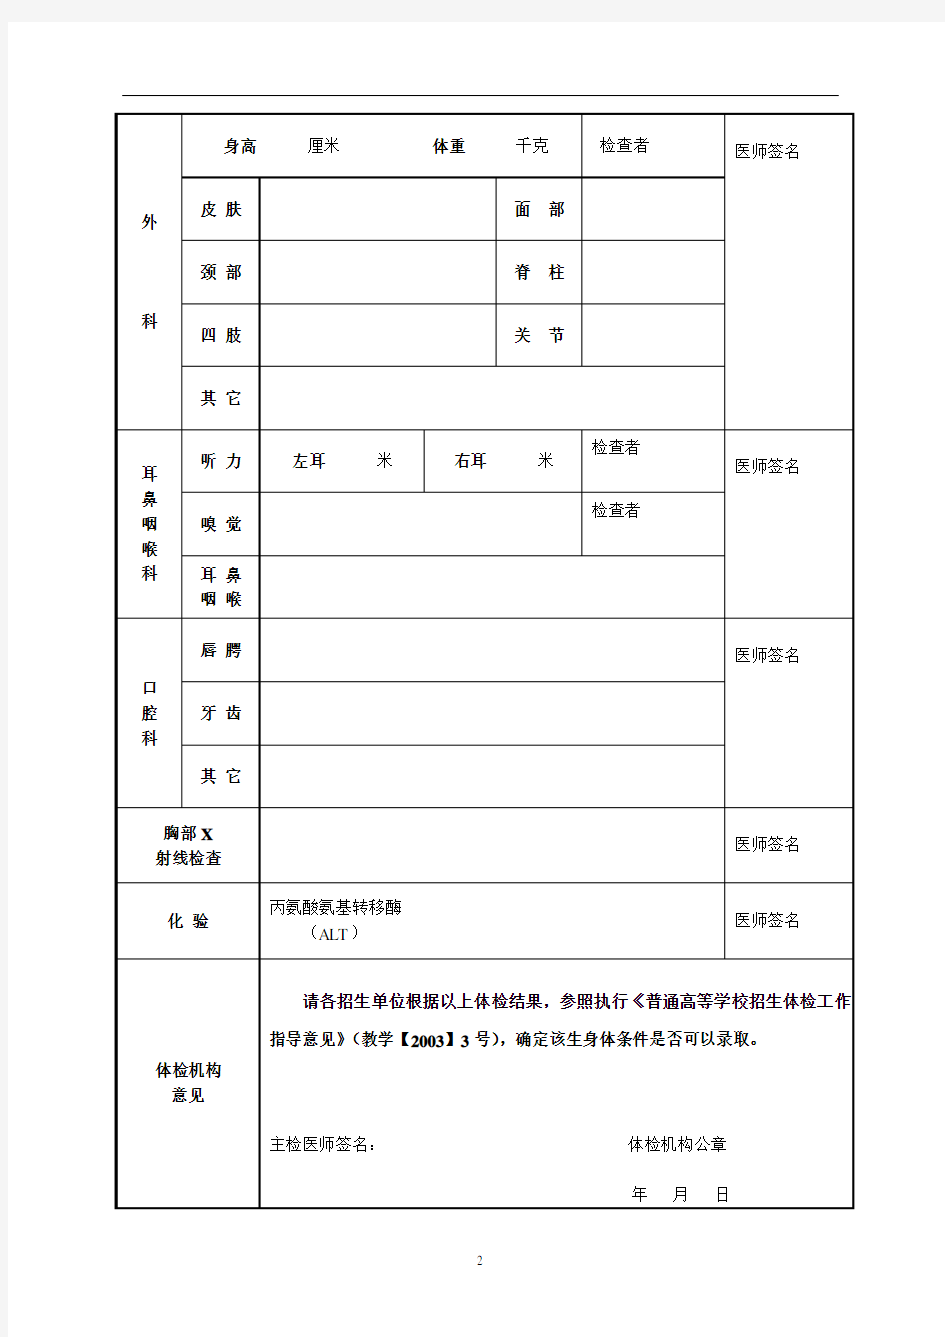 北京第二外国语学院2018年推免生体格检查表